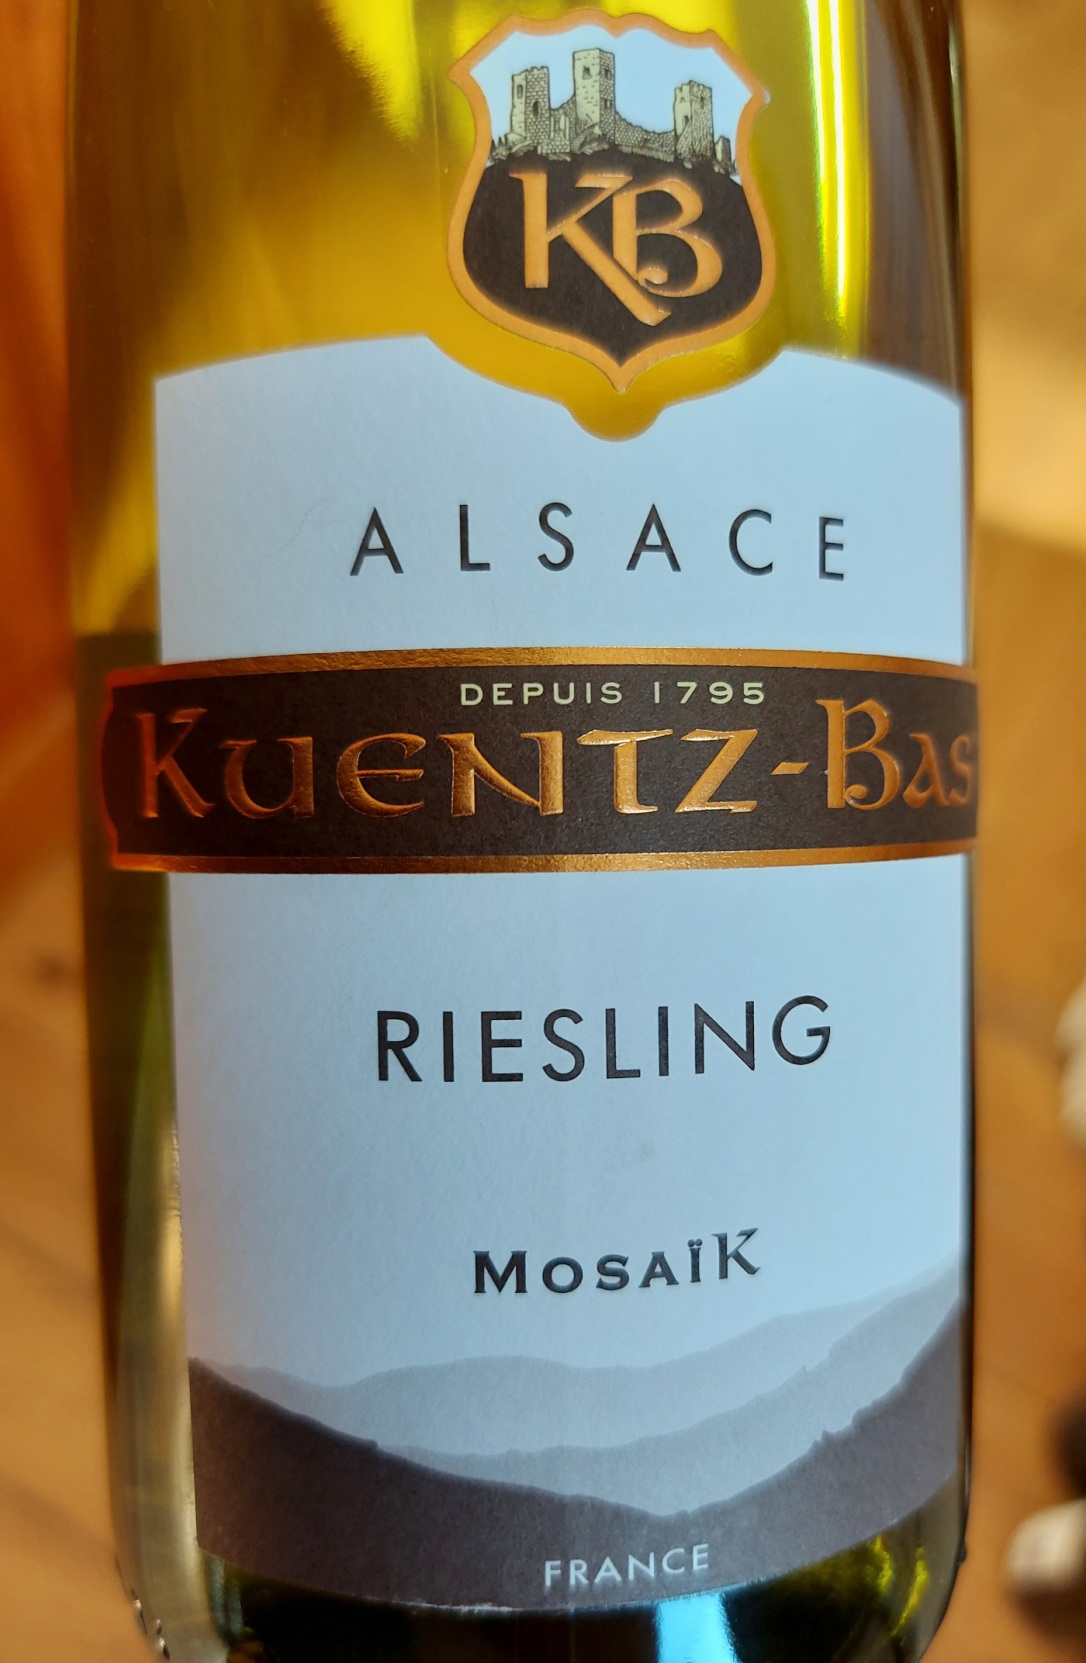 Kuentz-Bas Riesling Mosaik 2